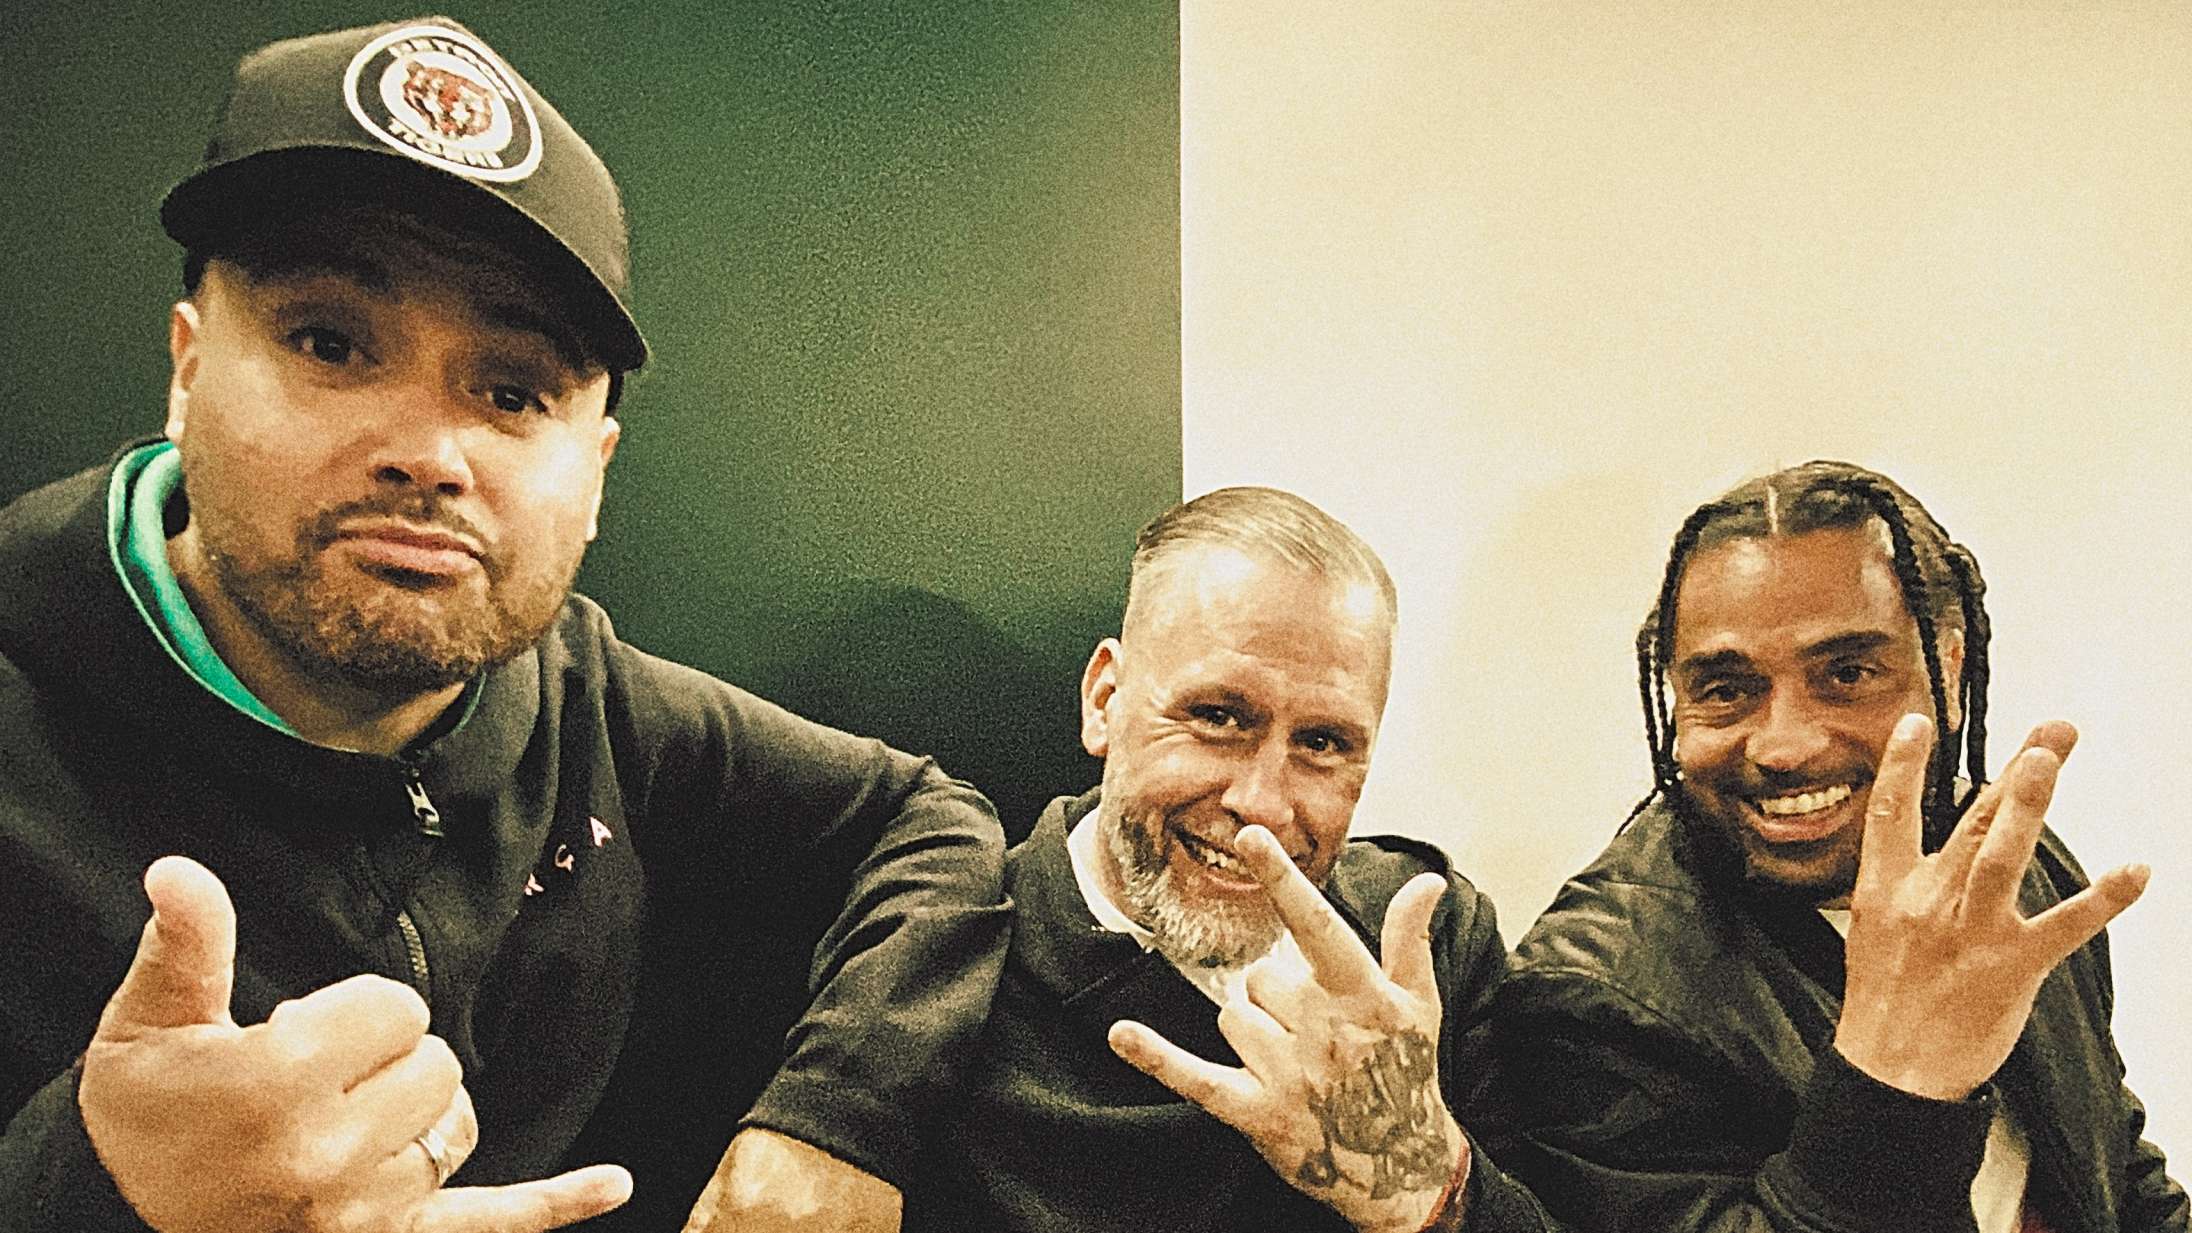 Tre af de største danske rappere fra 00’erne er genforenet på nyt track – se videoen til ‘Hvassådair’ af L.O.C., Uso og Marwan